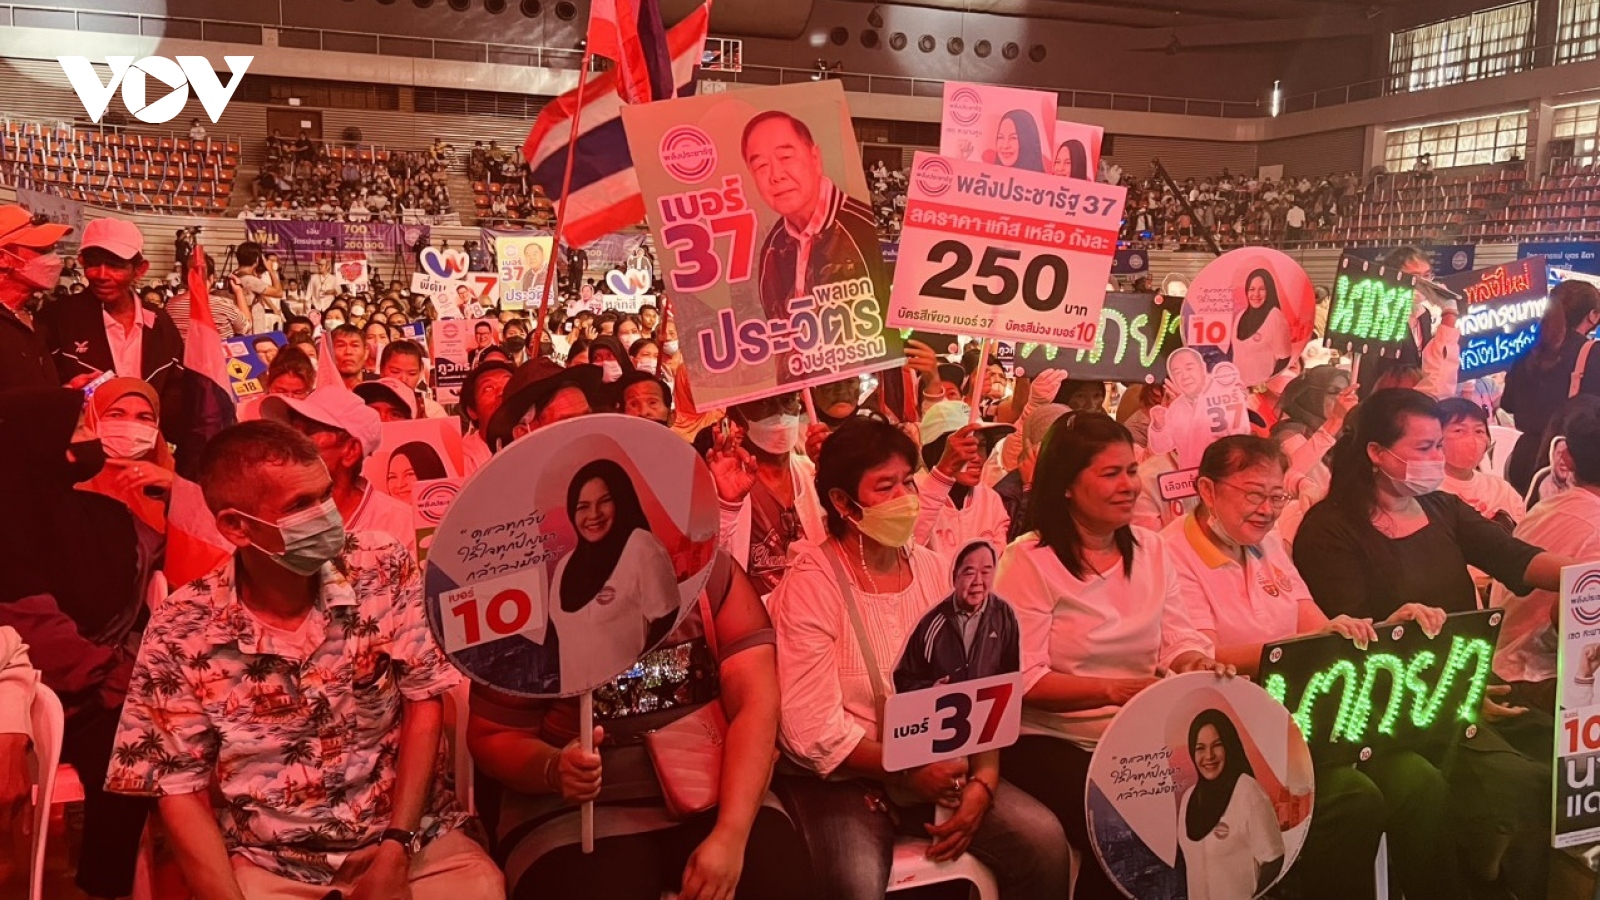 Ủy ban bầu cử Thái Lan: Tỷ lệ người dân đi bỏ phiếu lên tới 85%